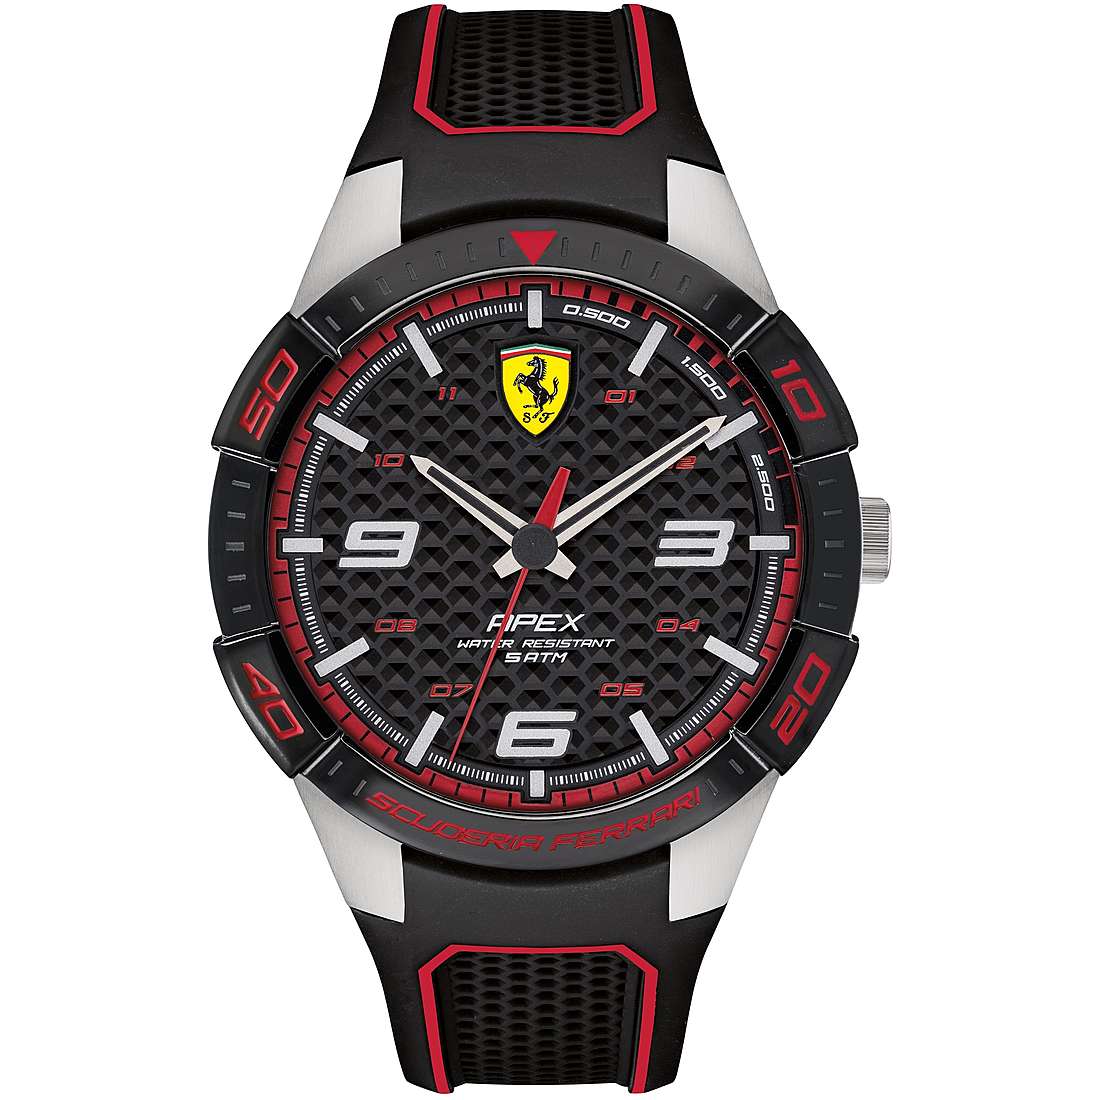 montre seul le temps homme Scuderia Ferrari FER0830630